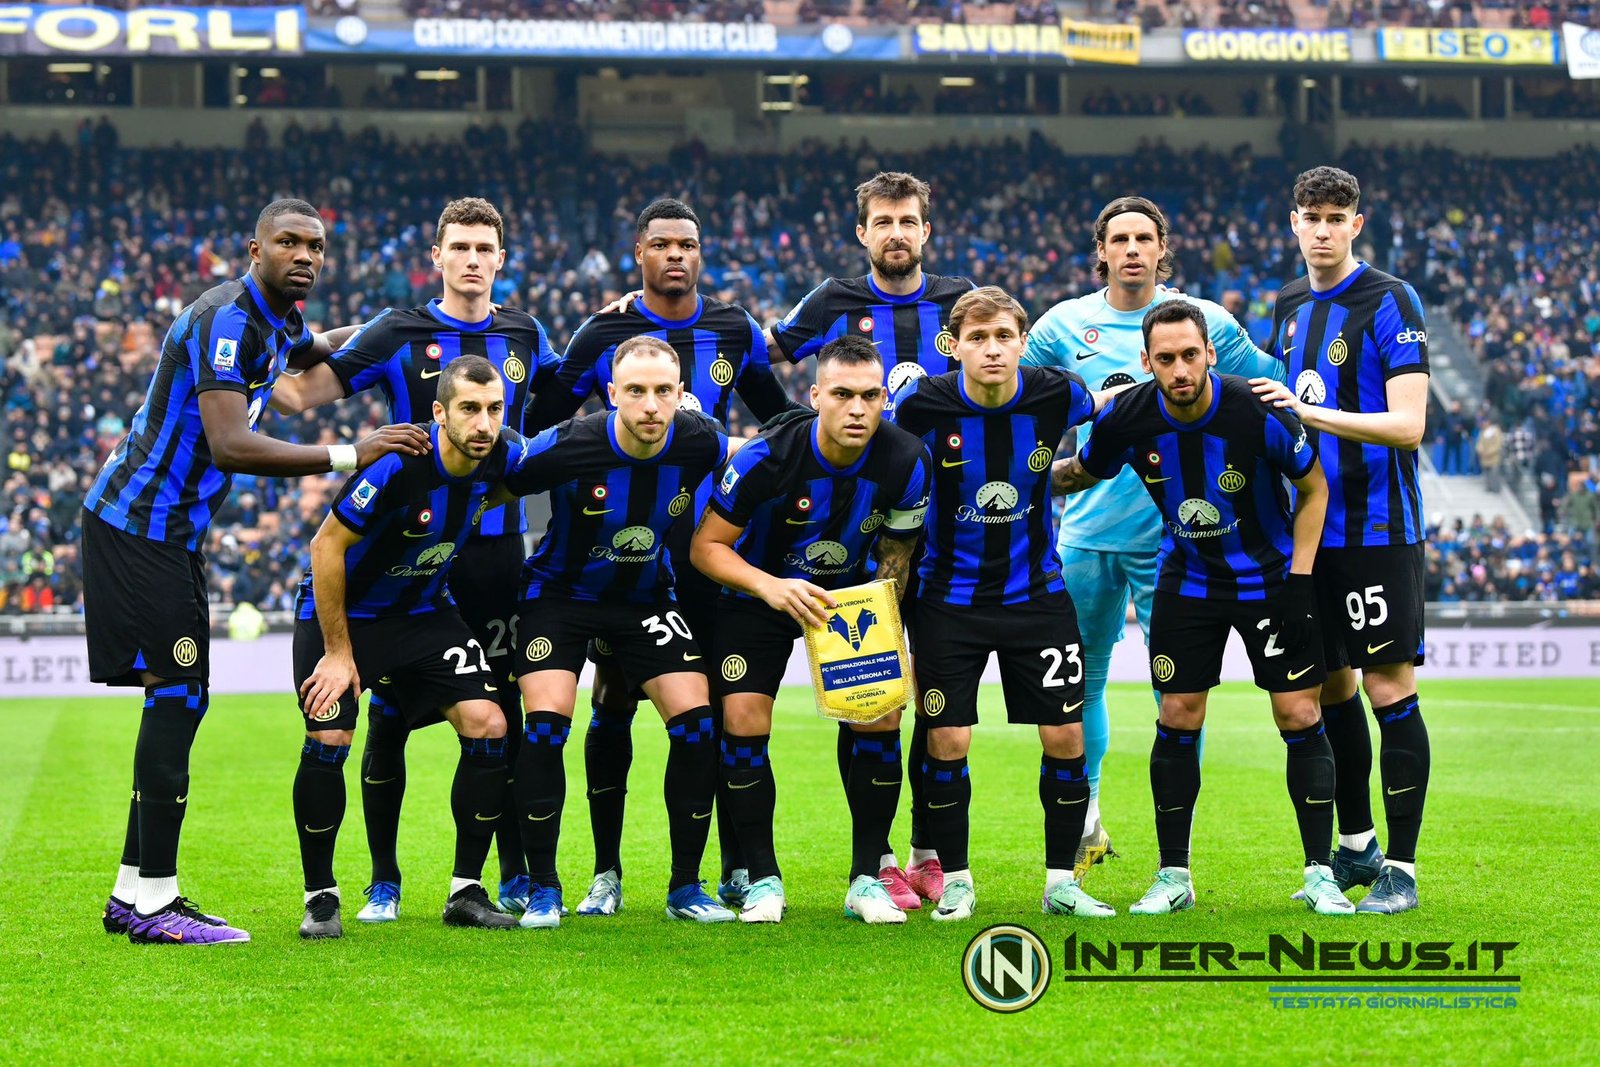 Verona Inter, Inzaghi cambia un ruolo per intero! Novità di formazione